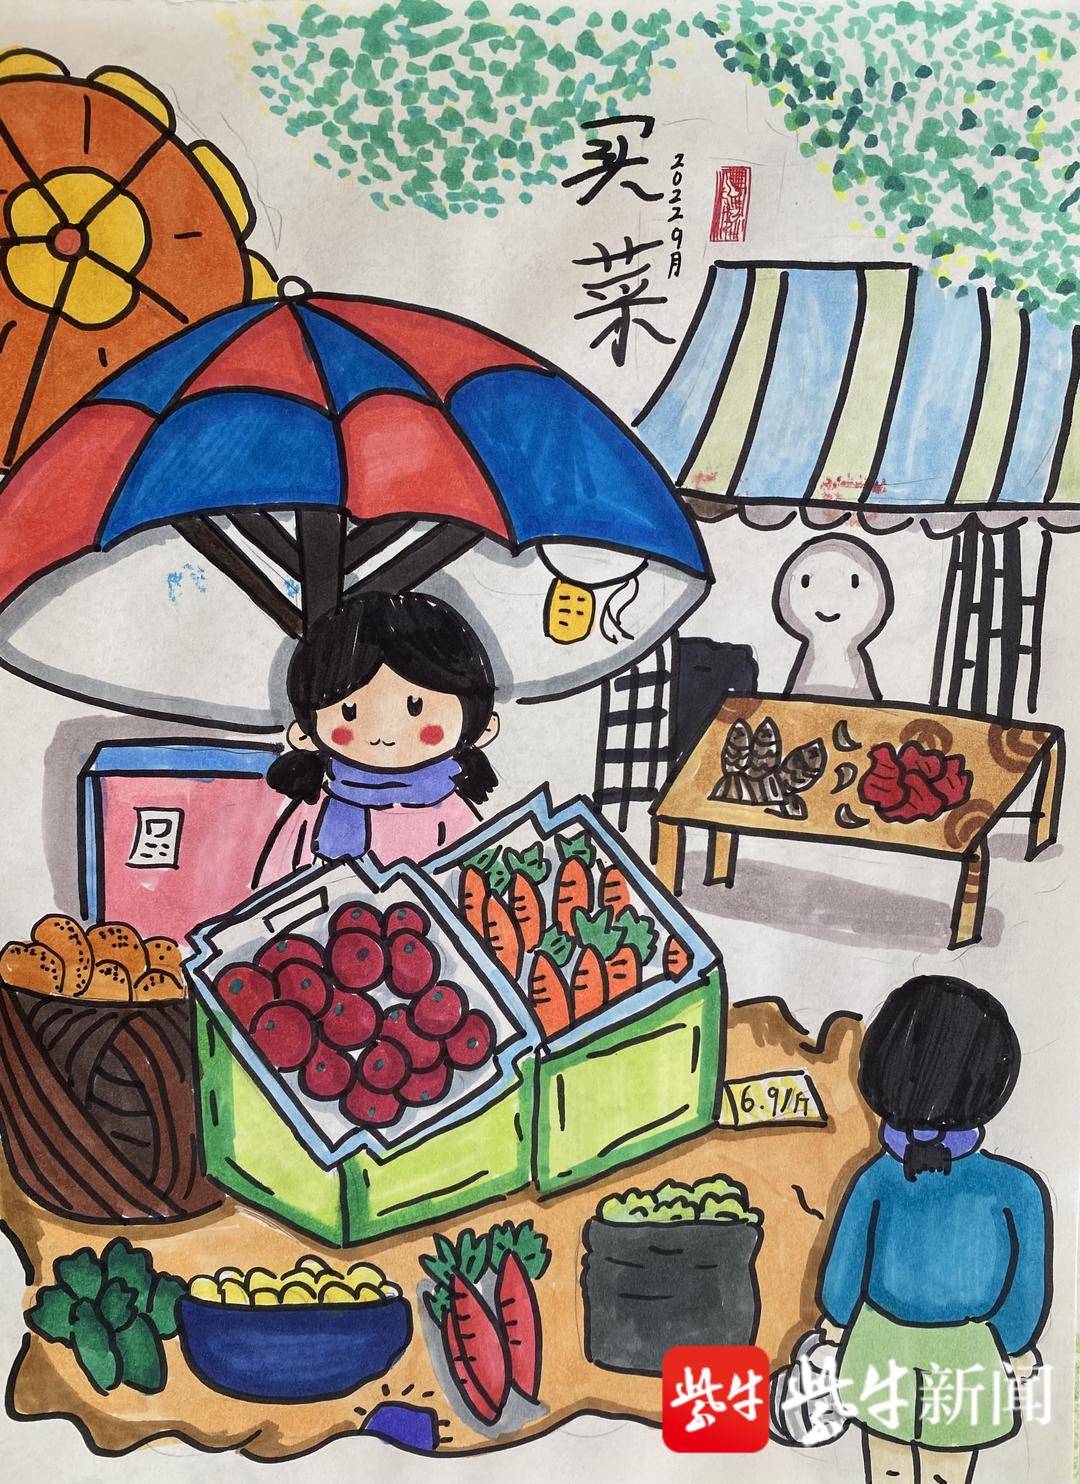 菜市场儿童画 简笔画图片